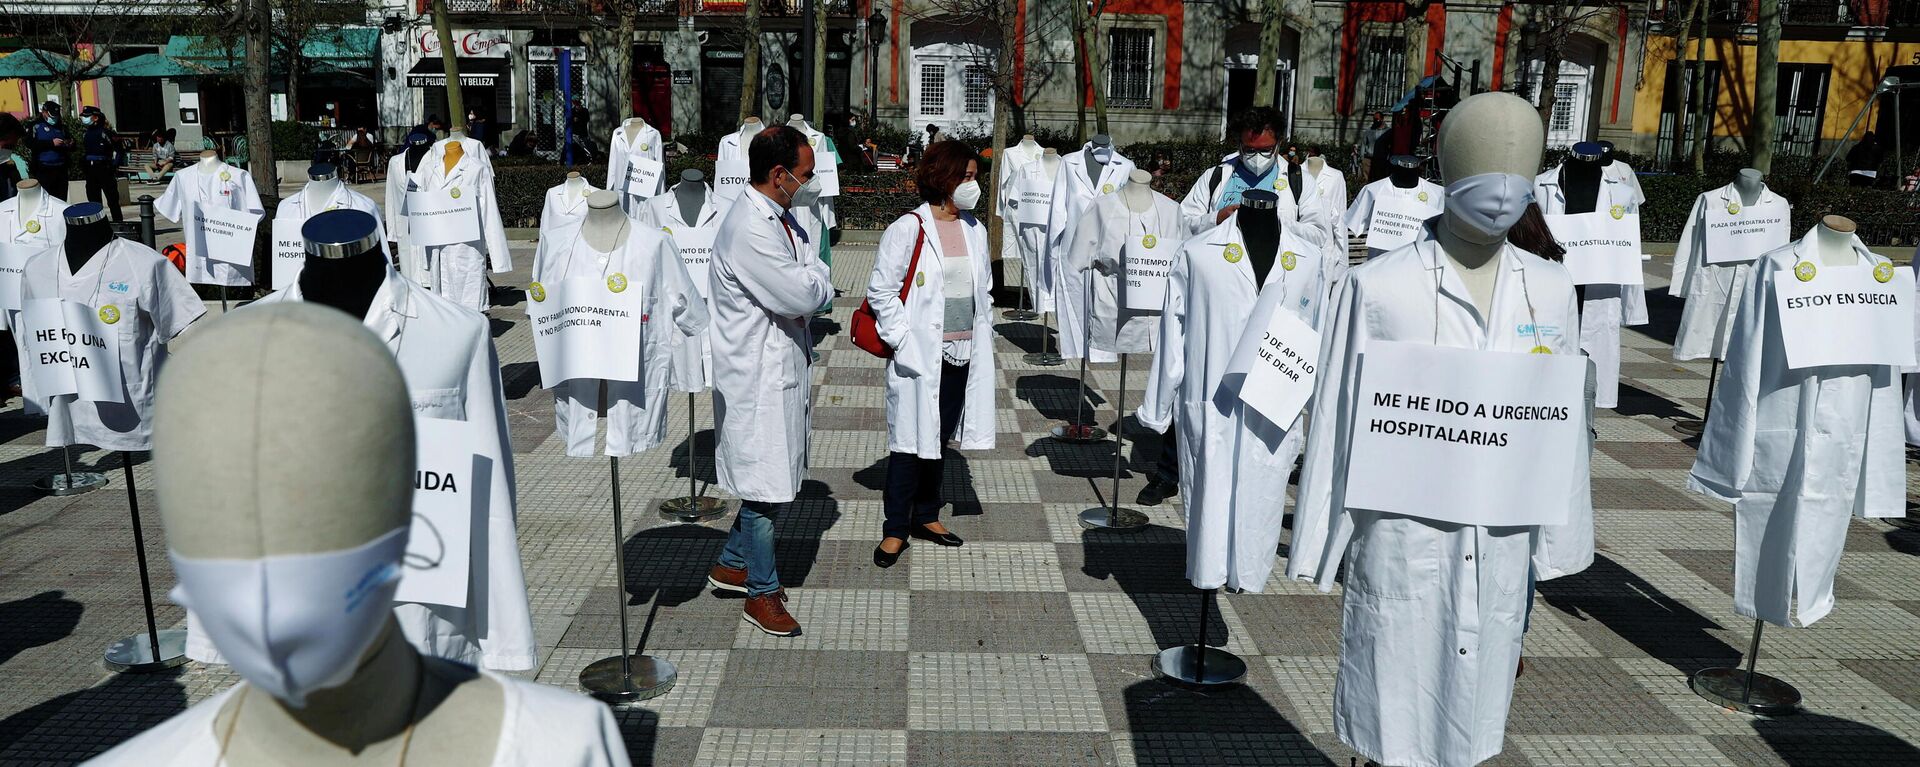 Huelga de médicos en Madrid - Sputnik Mundo, 1920, 10.03.2021